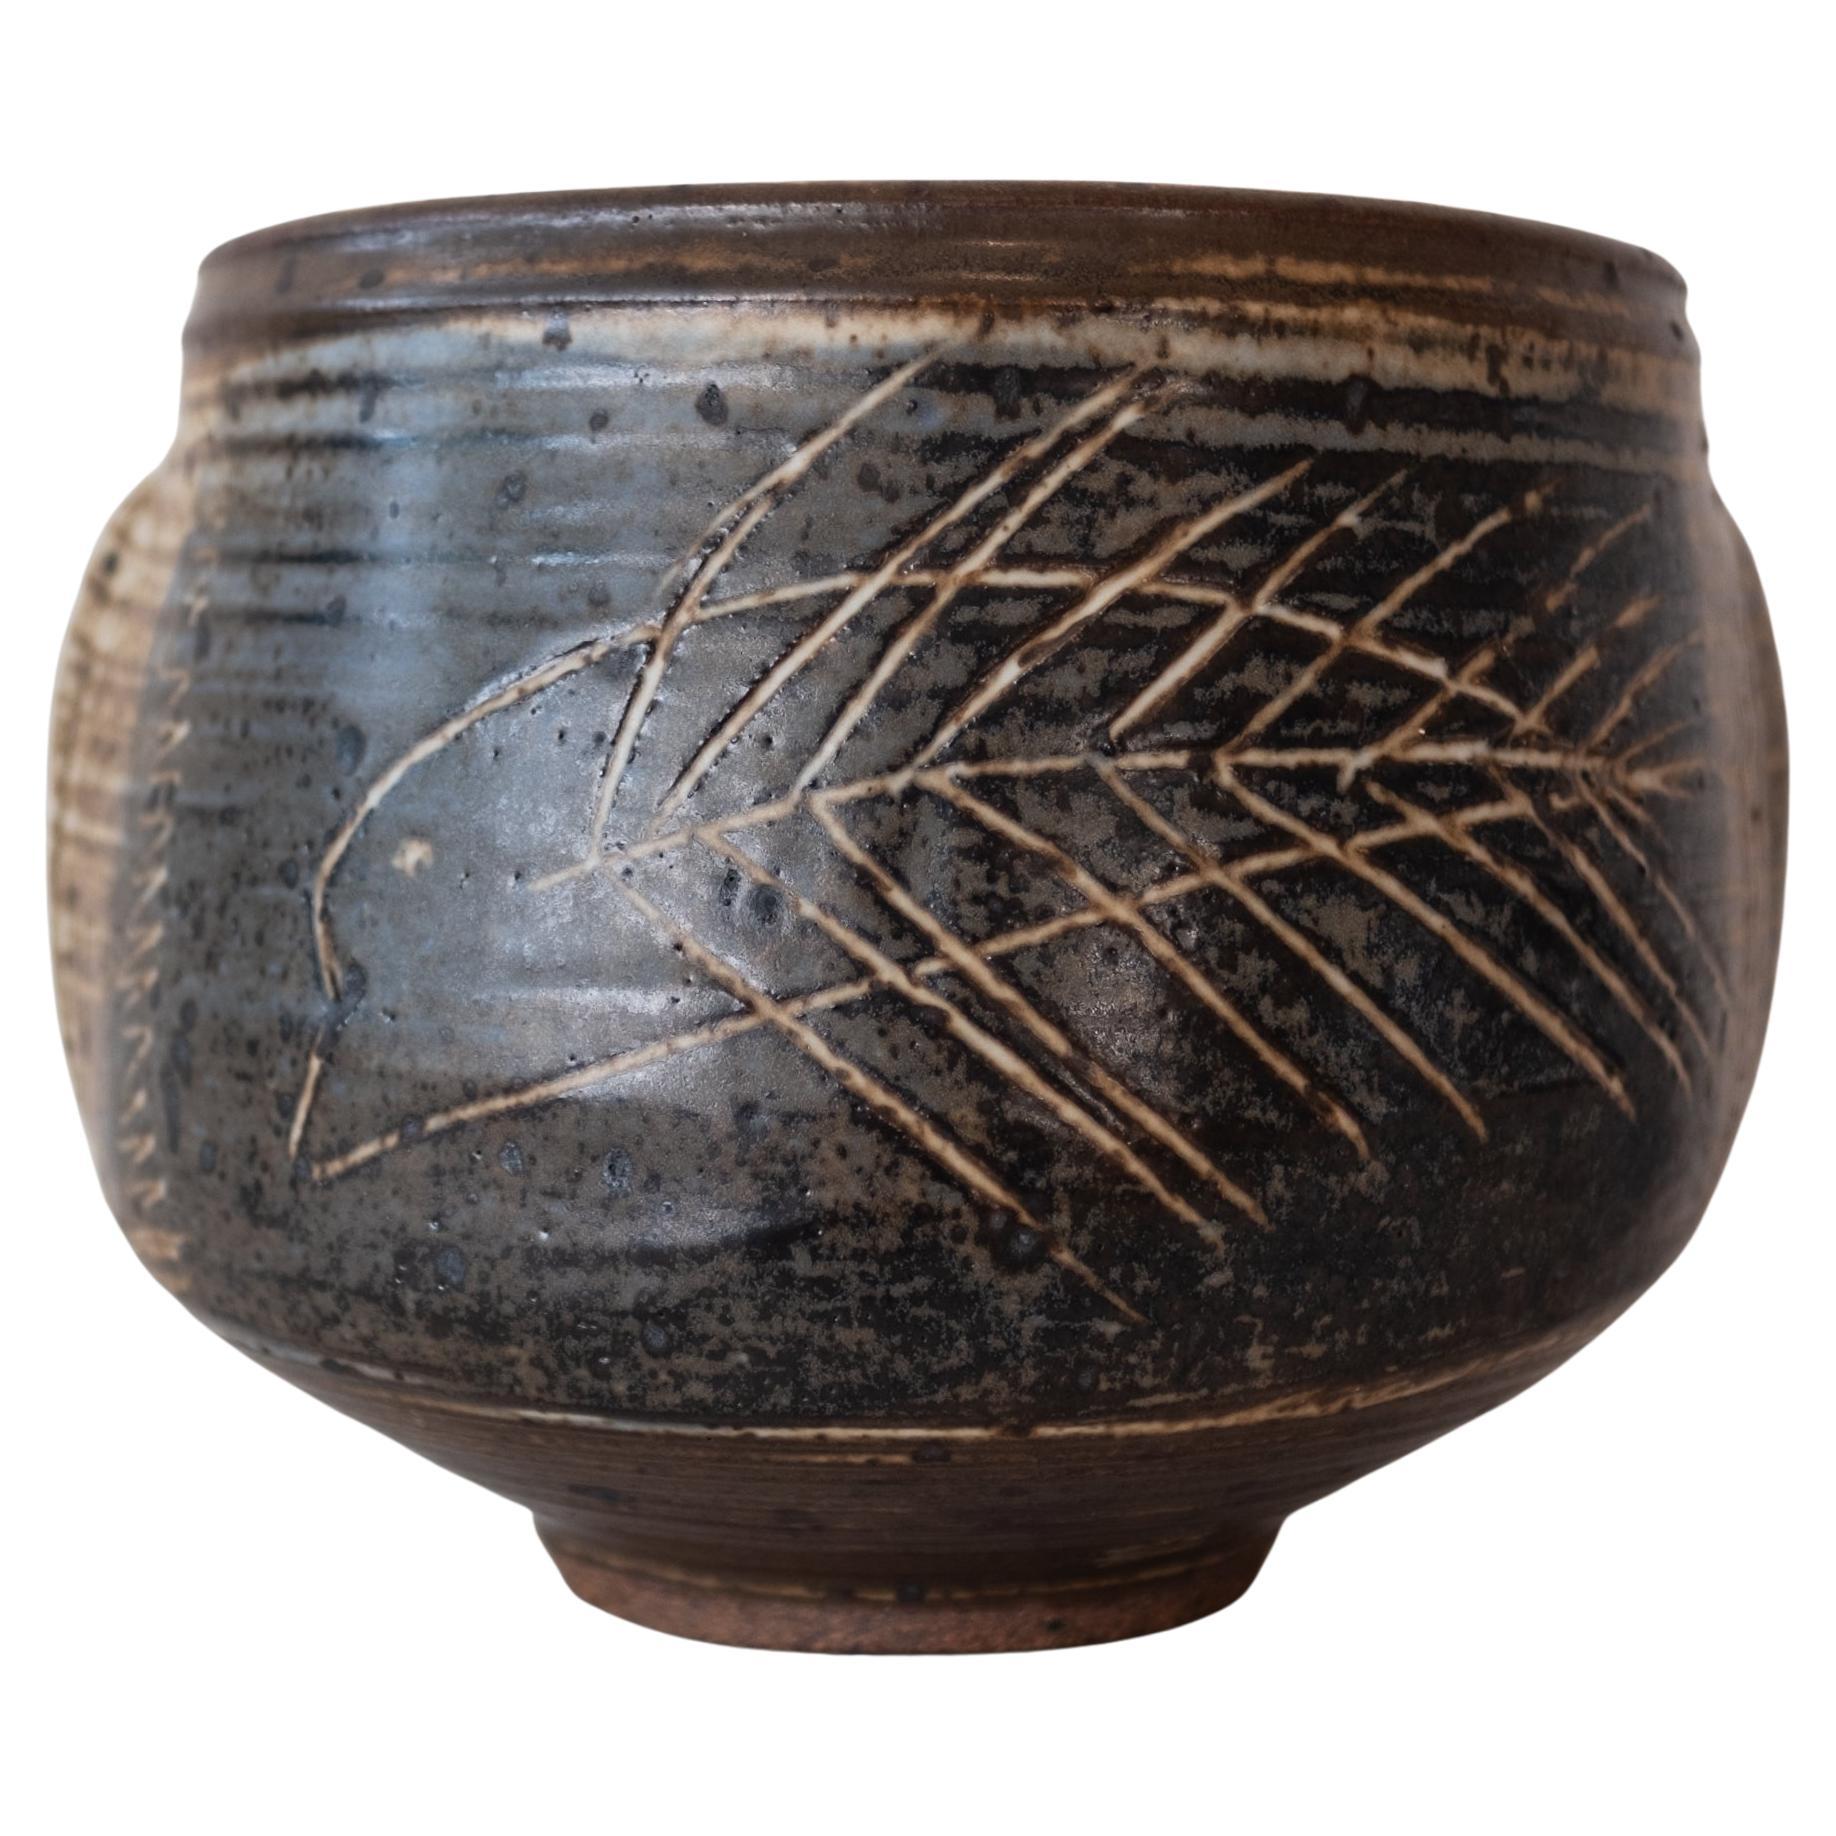 Vivika and Otto Heino Large Decorated Ceramic Bowl